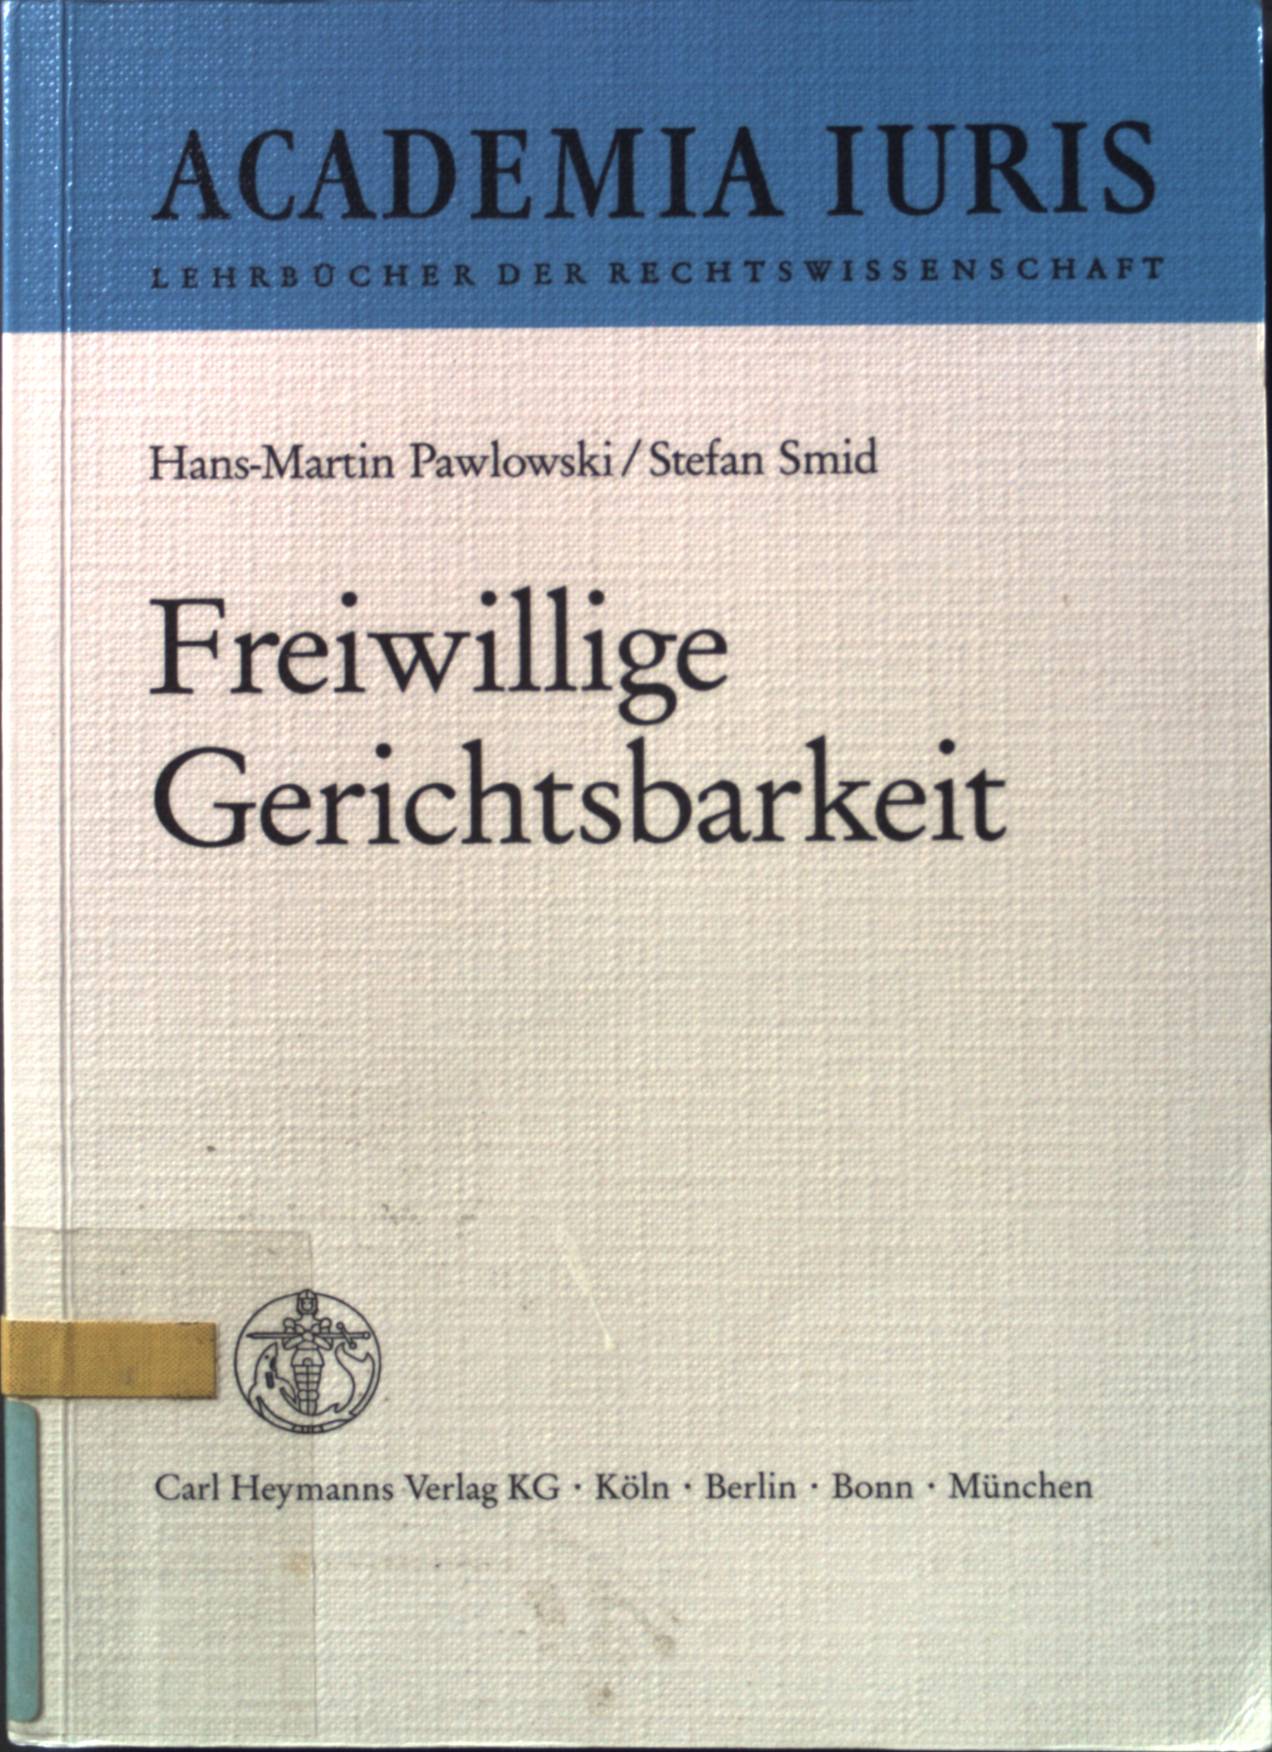 Freiwillige Gerichtsbarkeit: ein Lehrbuch. Academia iuris - Pawlowski, Hans-Martin und Stefan Smid